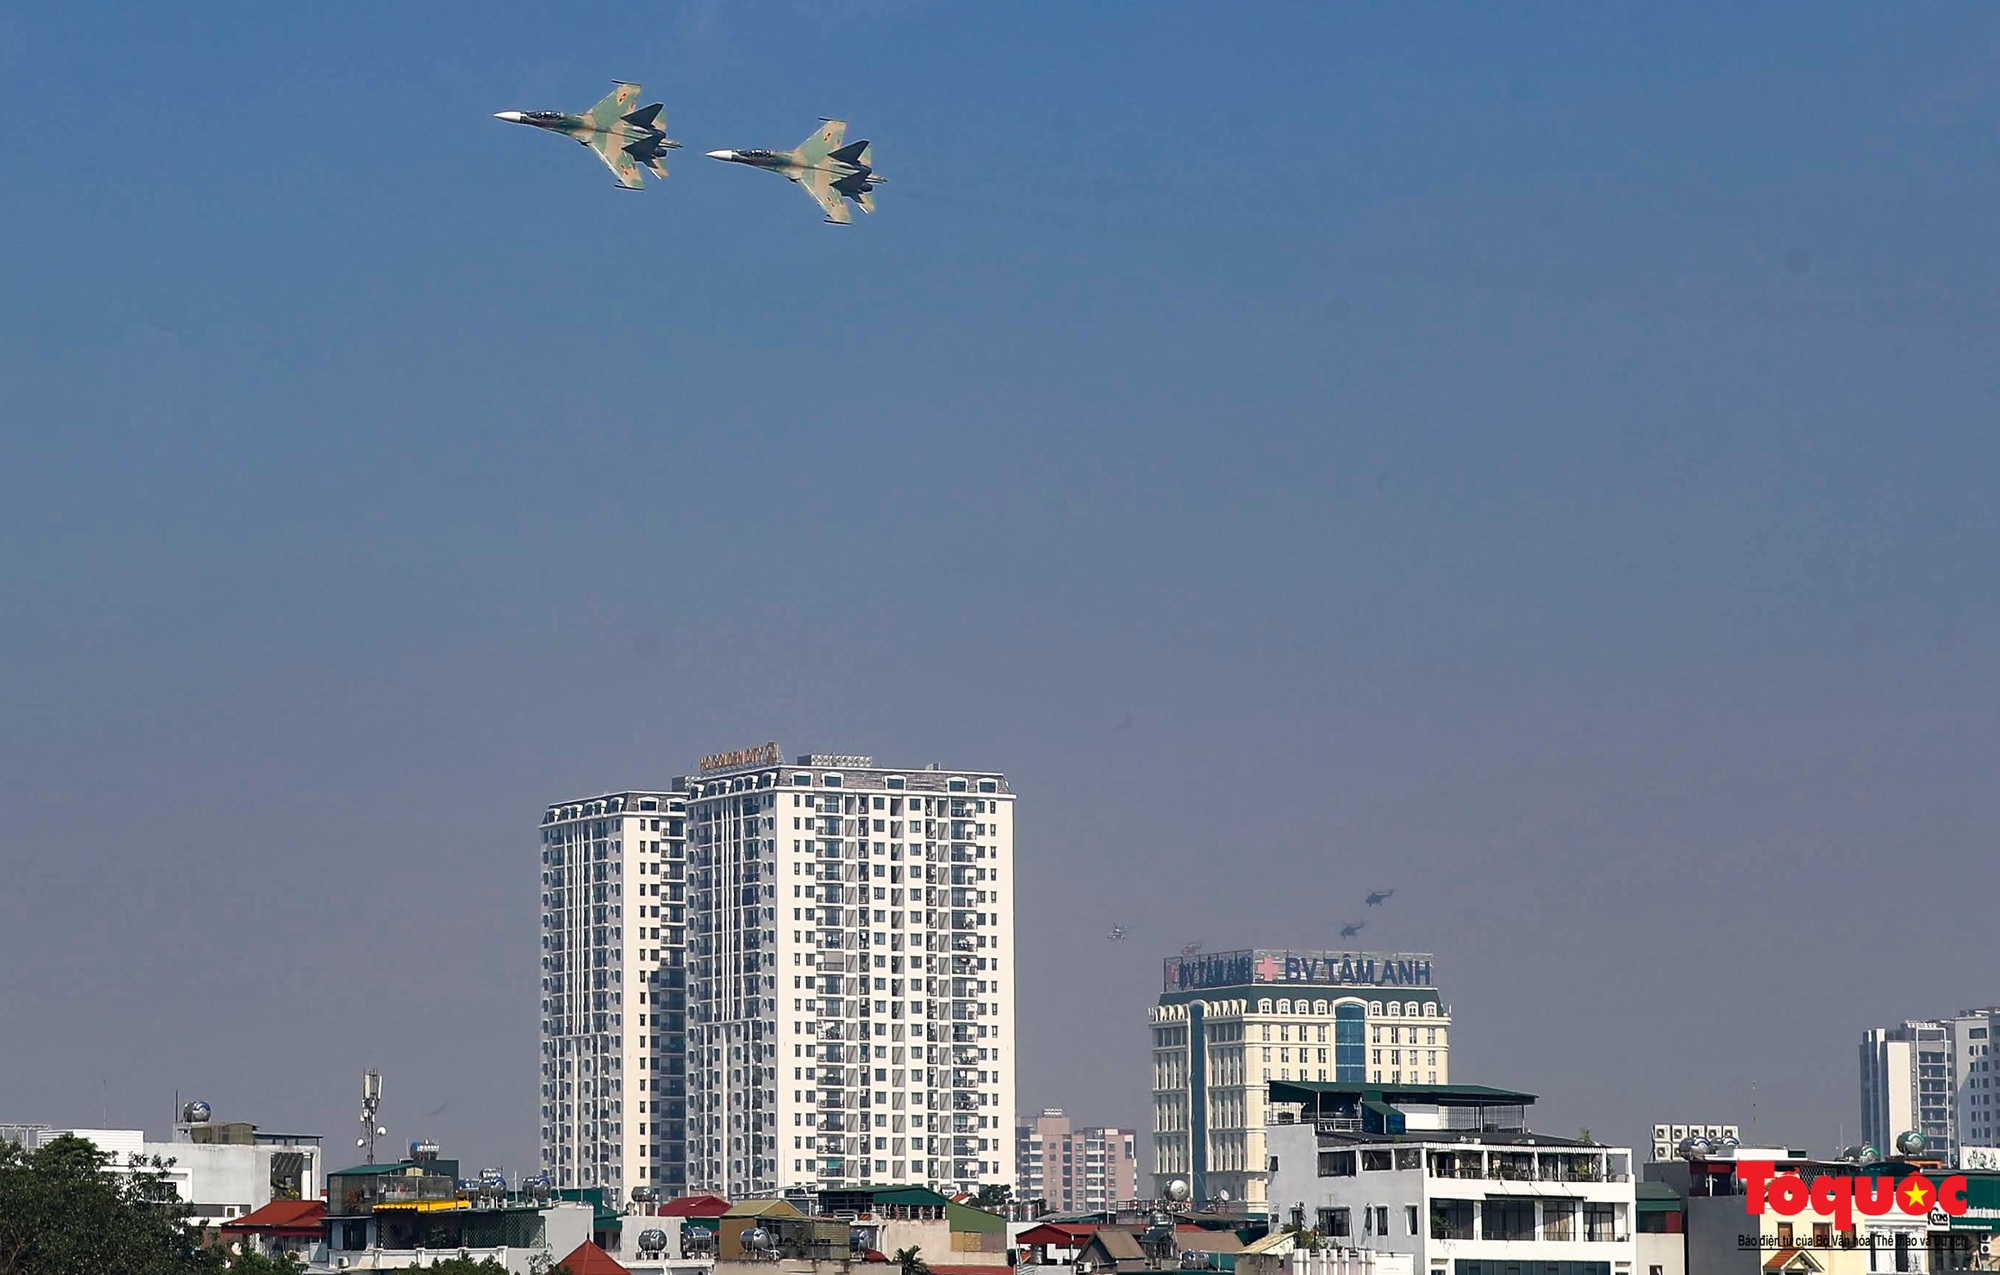 Mãn nhãn với  máy bay chiến đấu Sukhoi và trực thăng Mi thao diễn trên bầu trời Thủ đô Hà Nội - Ảnh 8.